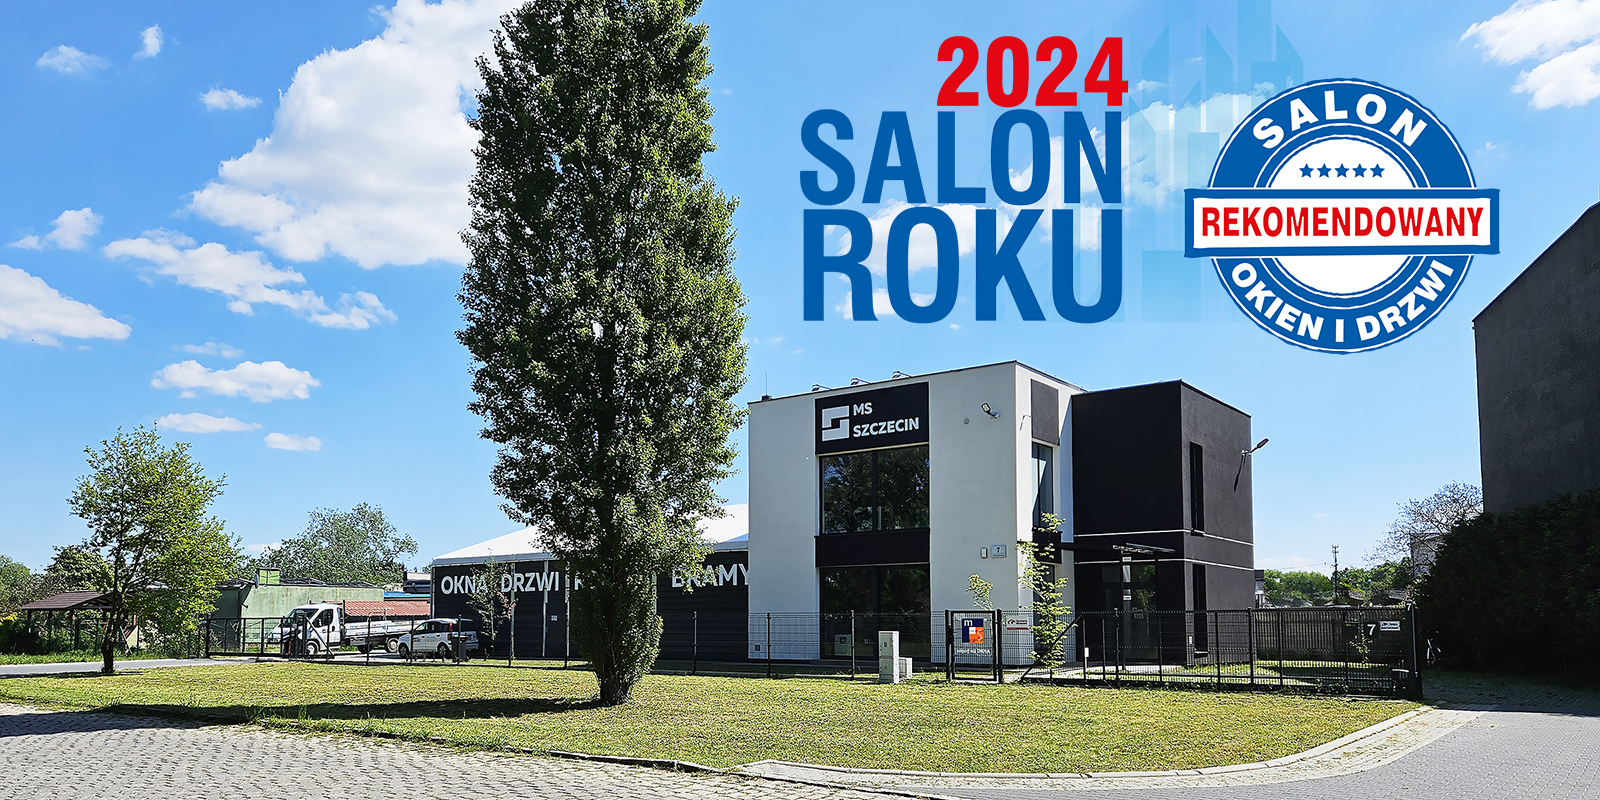 Nasz salon handlowy otrzymał tytuł SALON ROKU 2024!!!